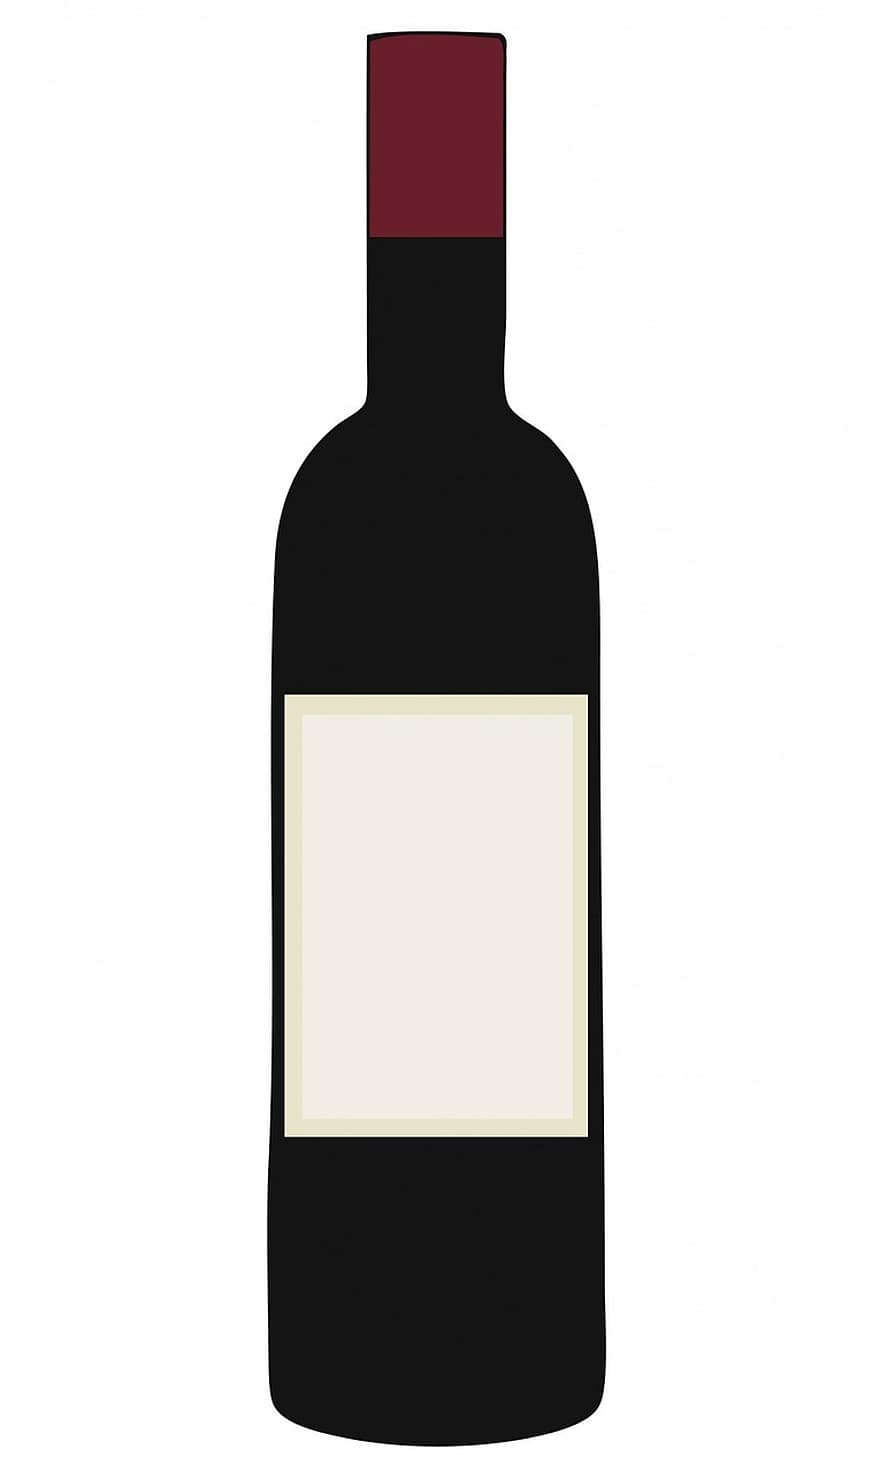 نبيذ ، زجاجة ، أحمر ، زجاجة نبيذ ، نبيذ احمر ، فارغ ، ضع الكلمة المناسبة ، تسمية فارغة ، الزجاج التوضيحي